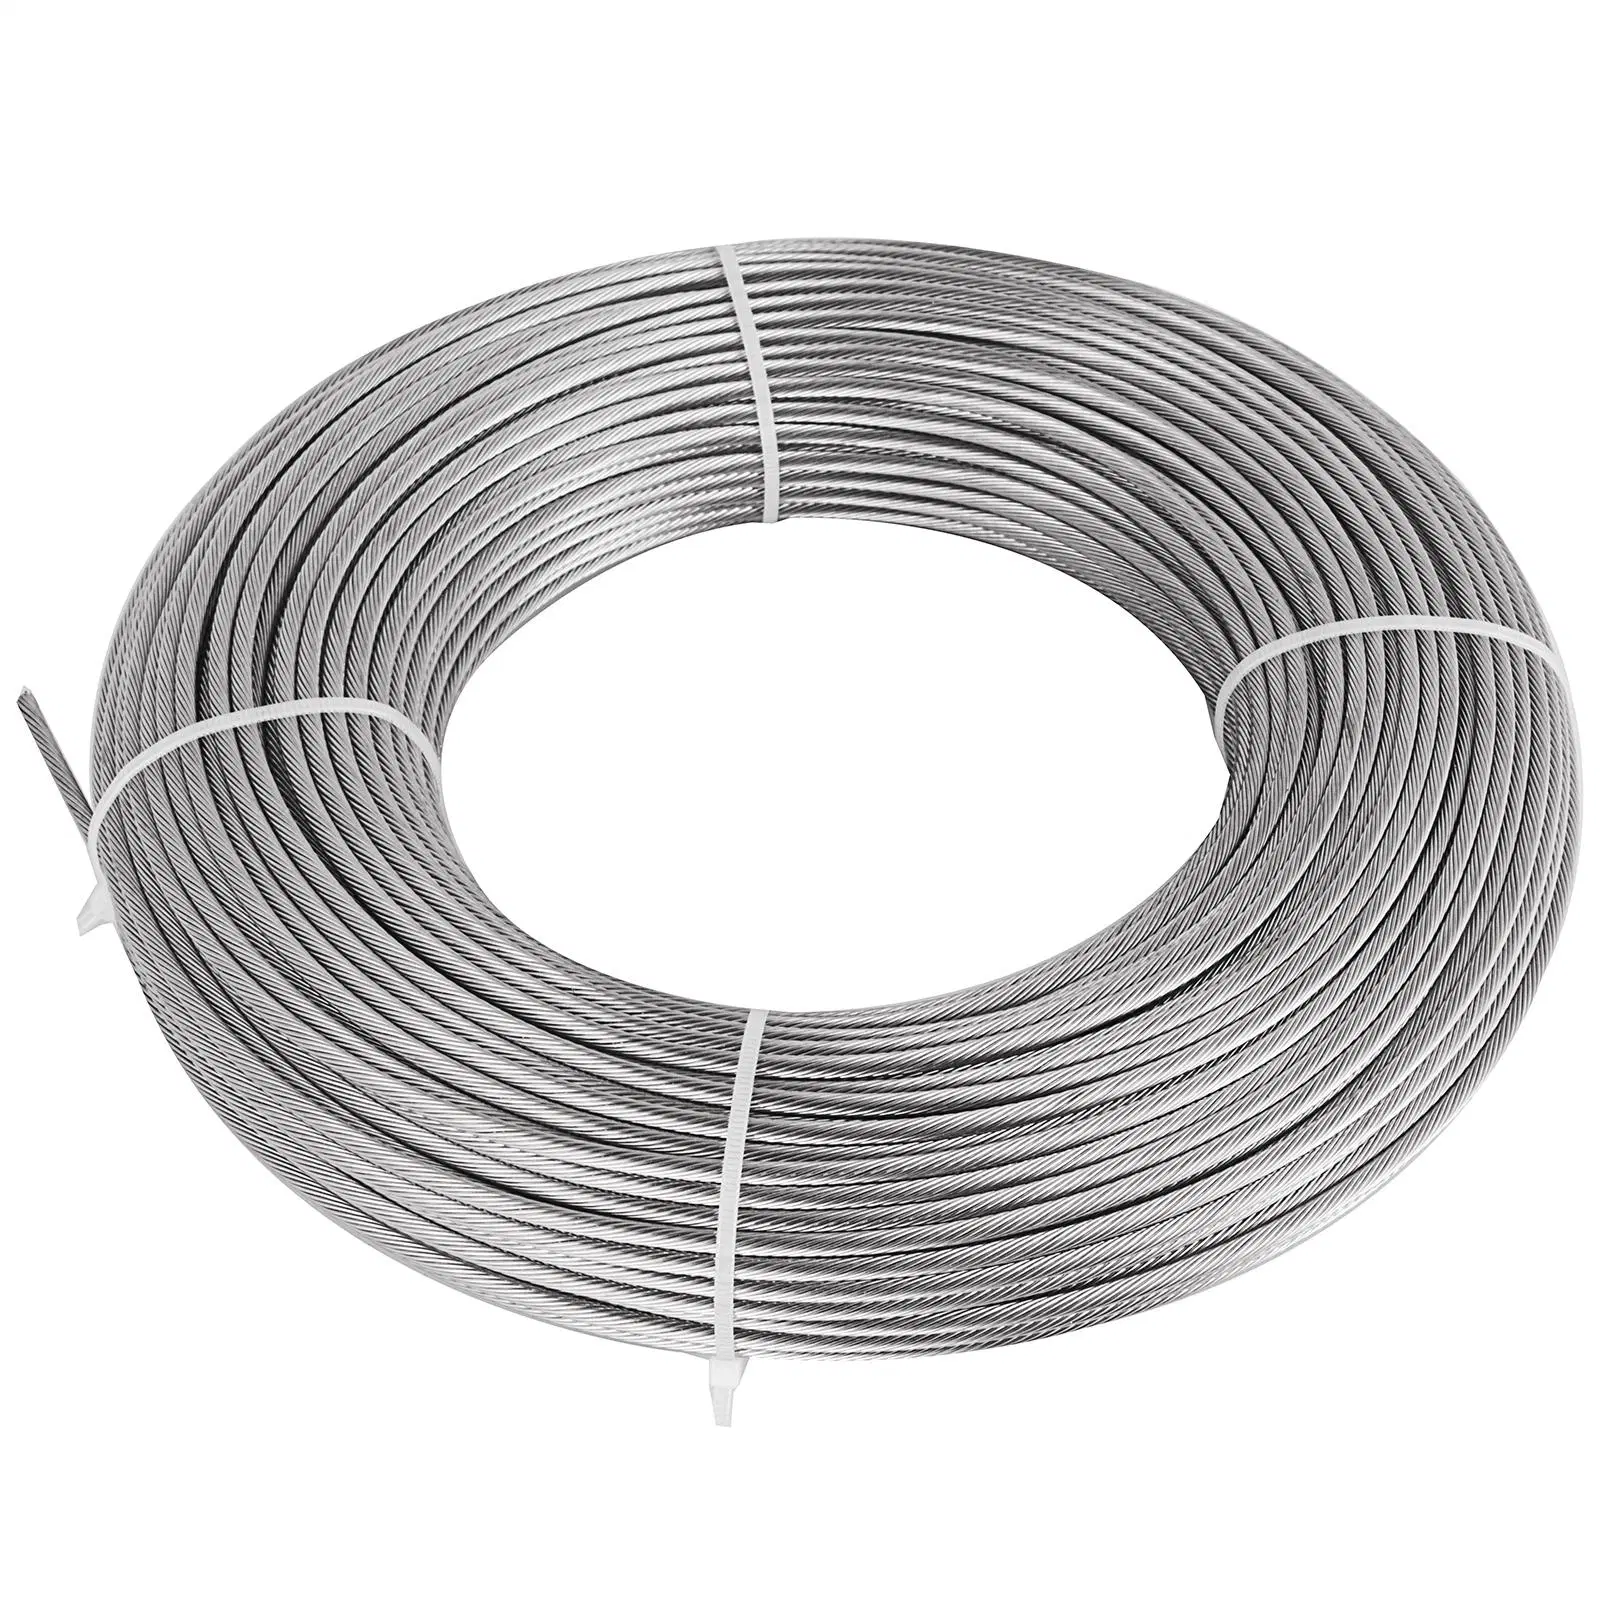 Spring Steel Wire/Galvanized Steel Wire/Stainless Steel Spring Wire /Steel Wire/PC304/304L/201/410/316/316L/S32750/S32205 Cold Drawn Bright Stainless Steel Wire